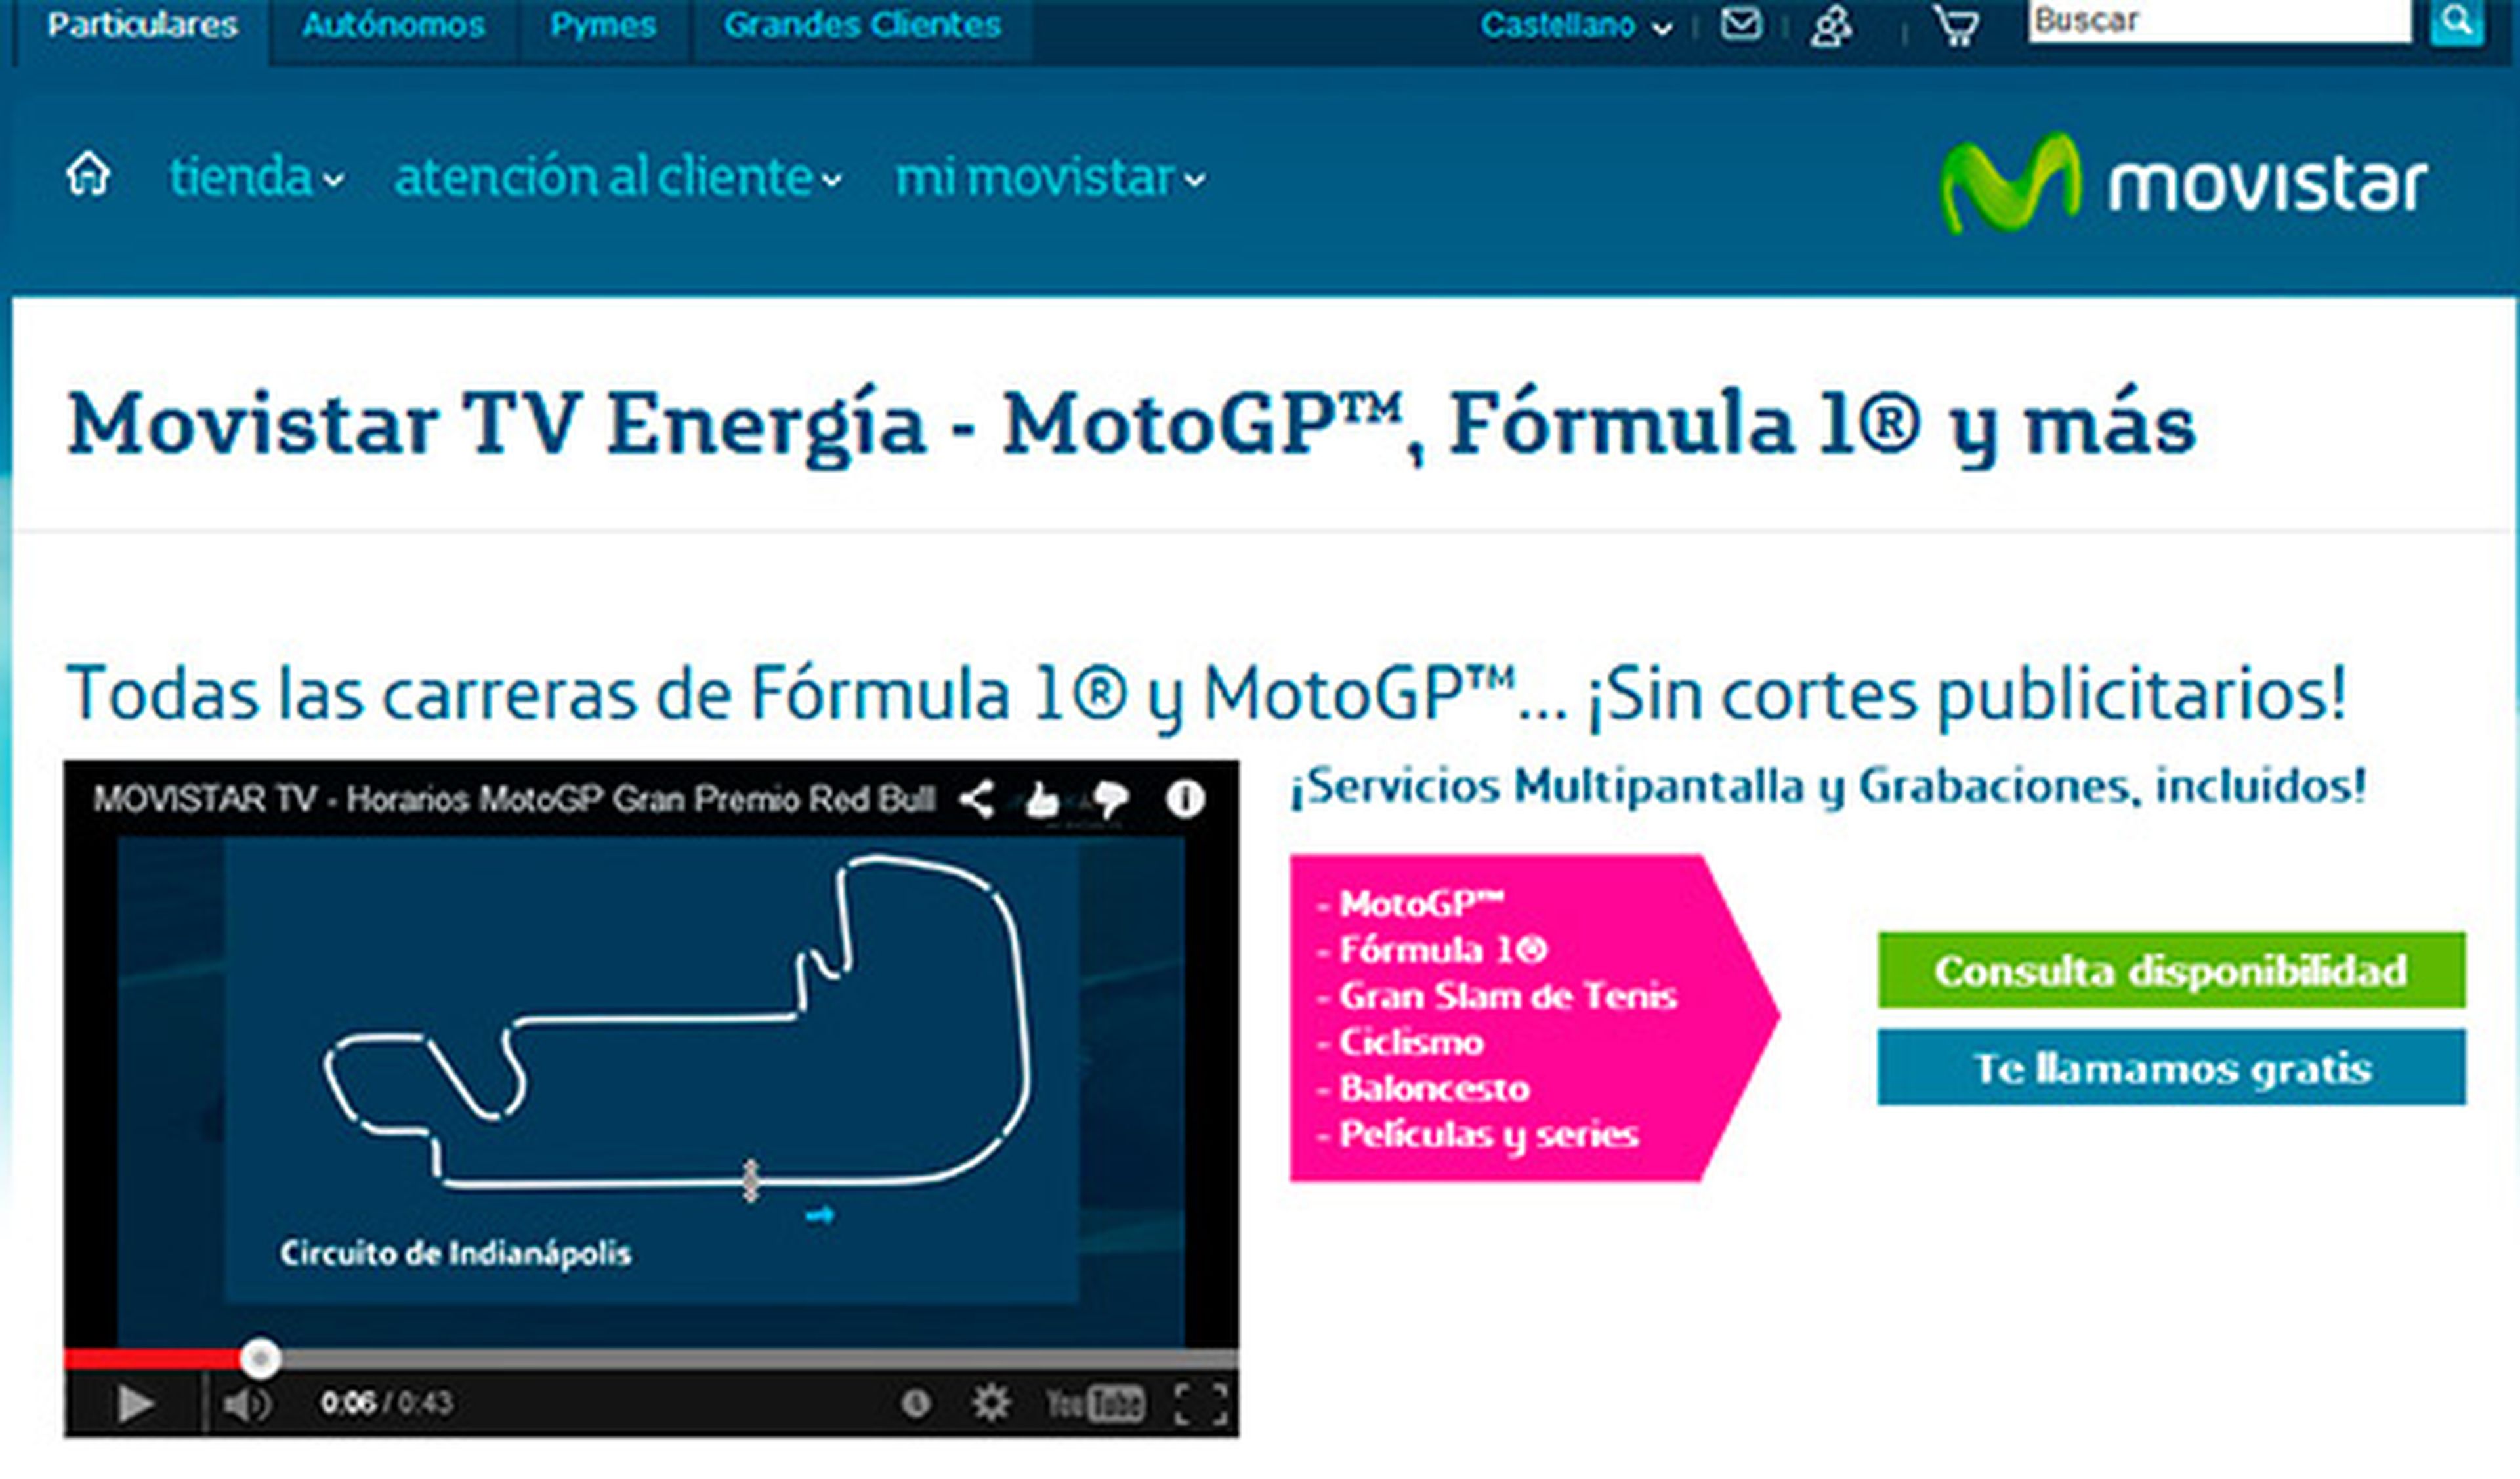 ver MotoGP online movistar TV Energía